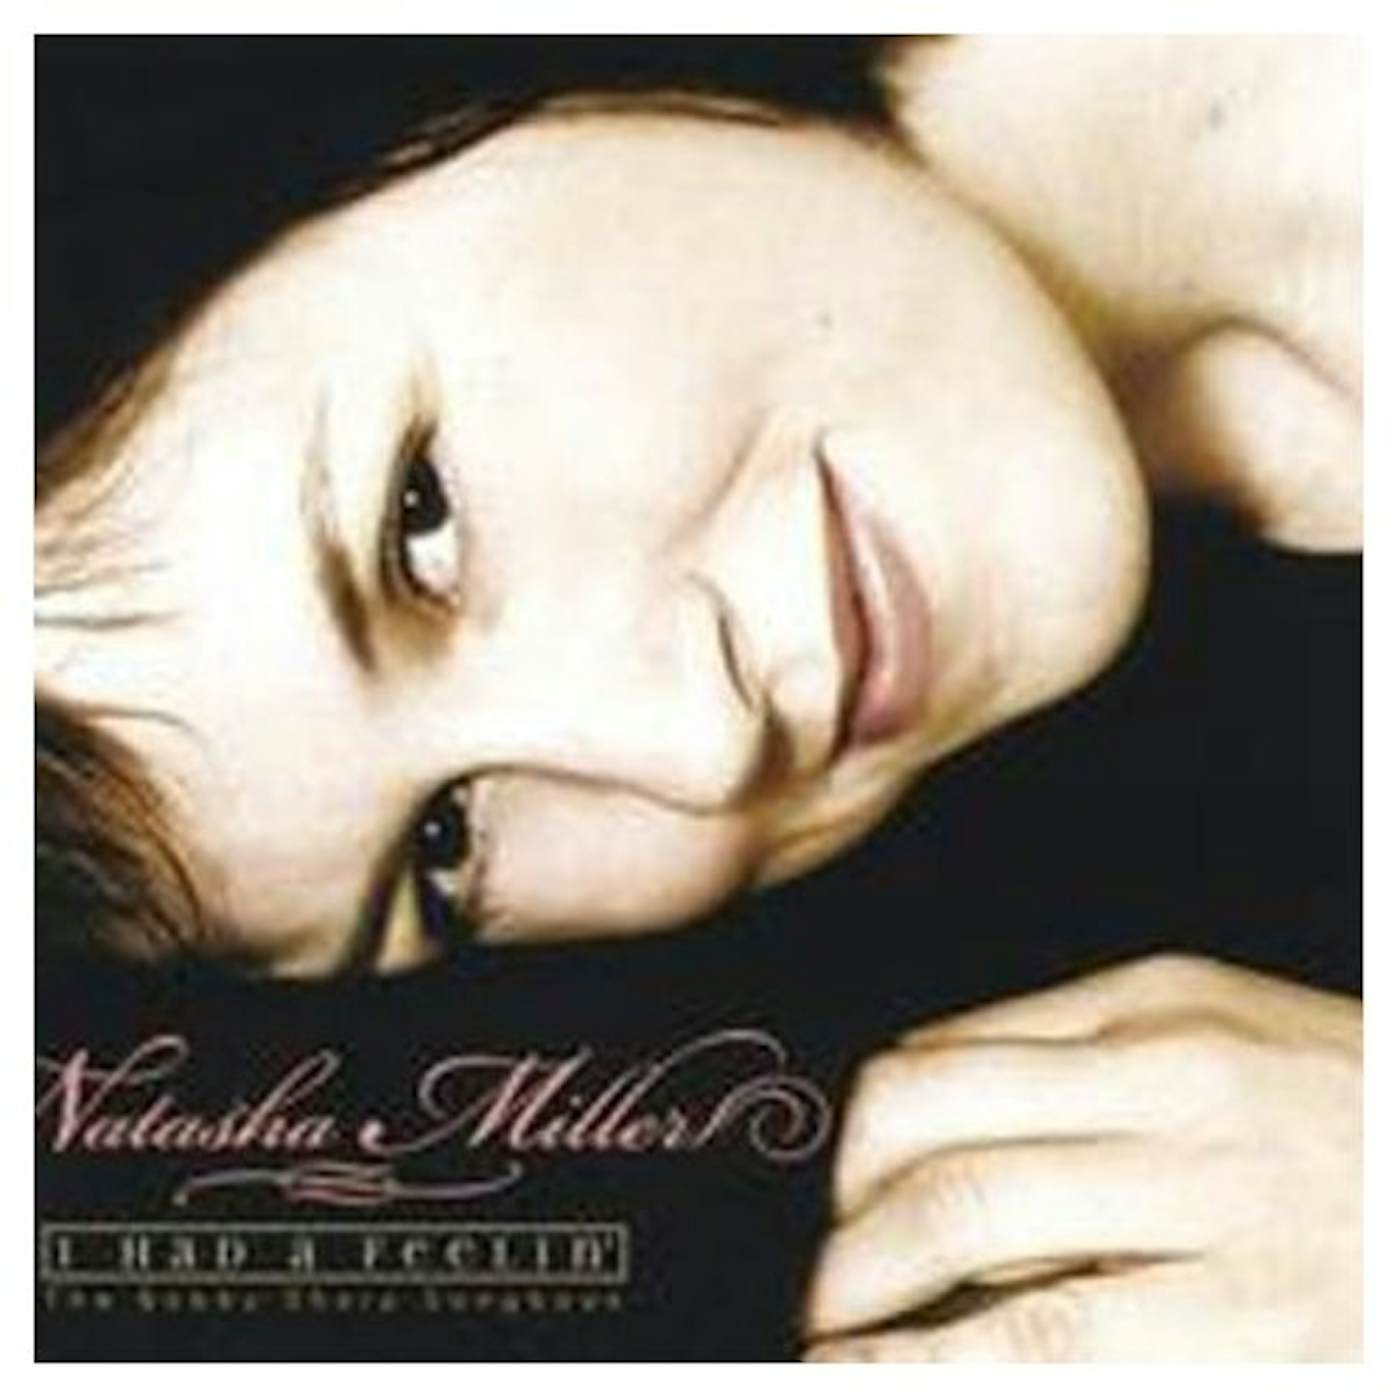 Natasha Miller I HAD A FEELIN' CD